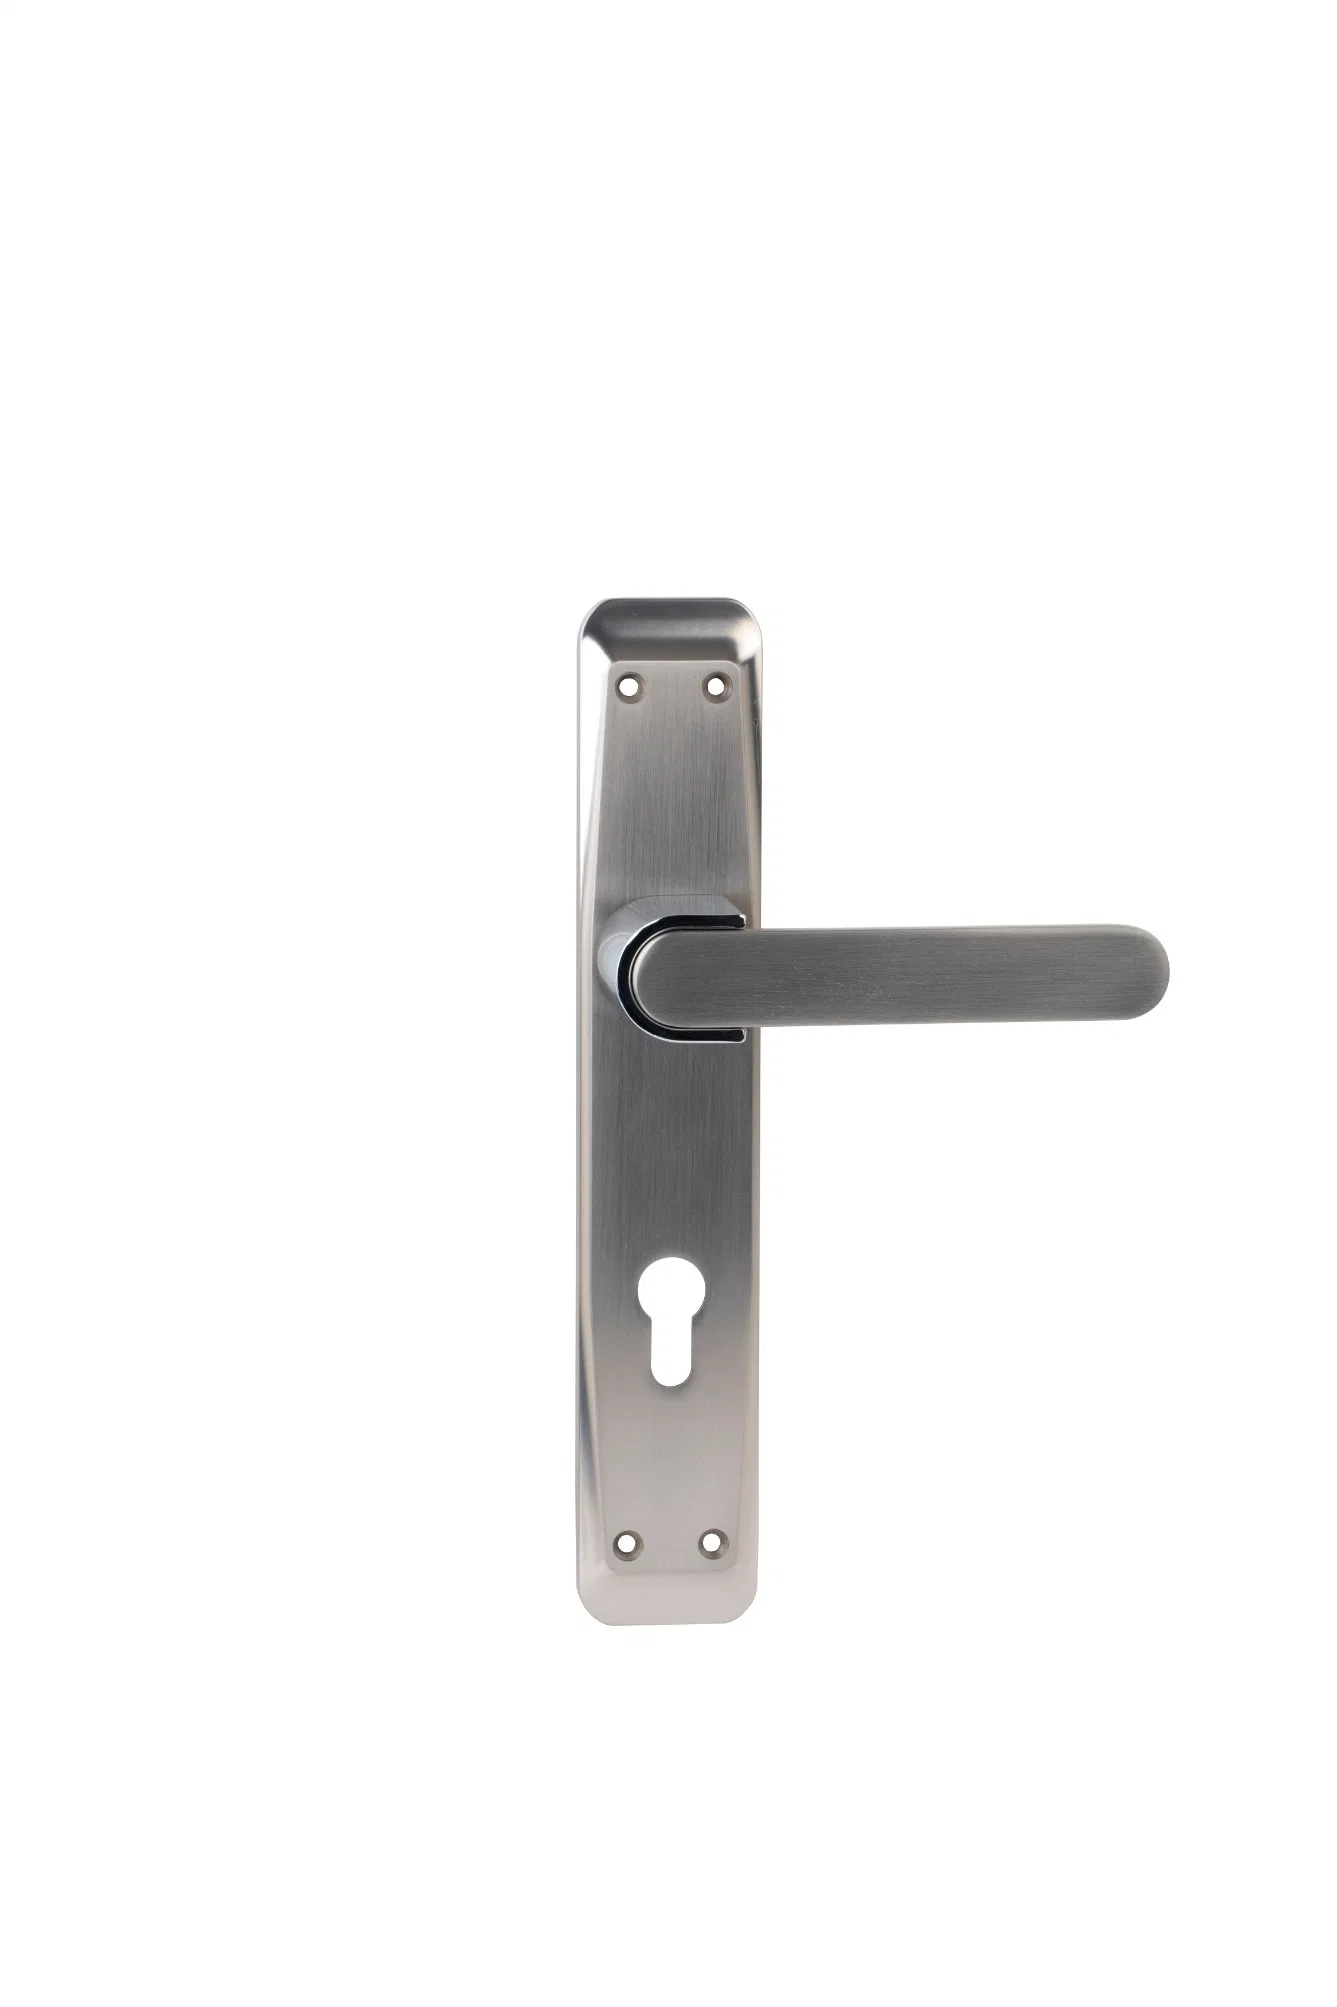 Chave de venda a quente Privacidade Segurança de Liga de zinco 85 mm porta Pega com placa fechadura de segurança para porta Pl165-H262